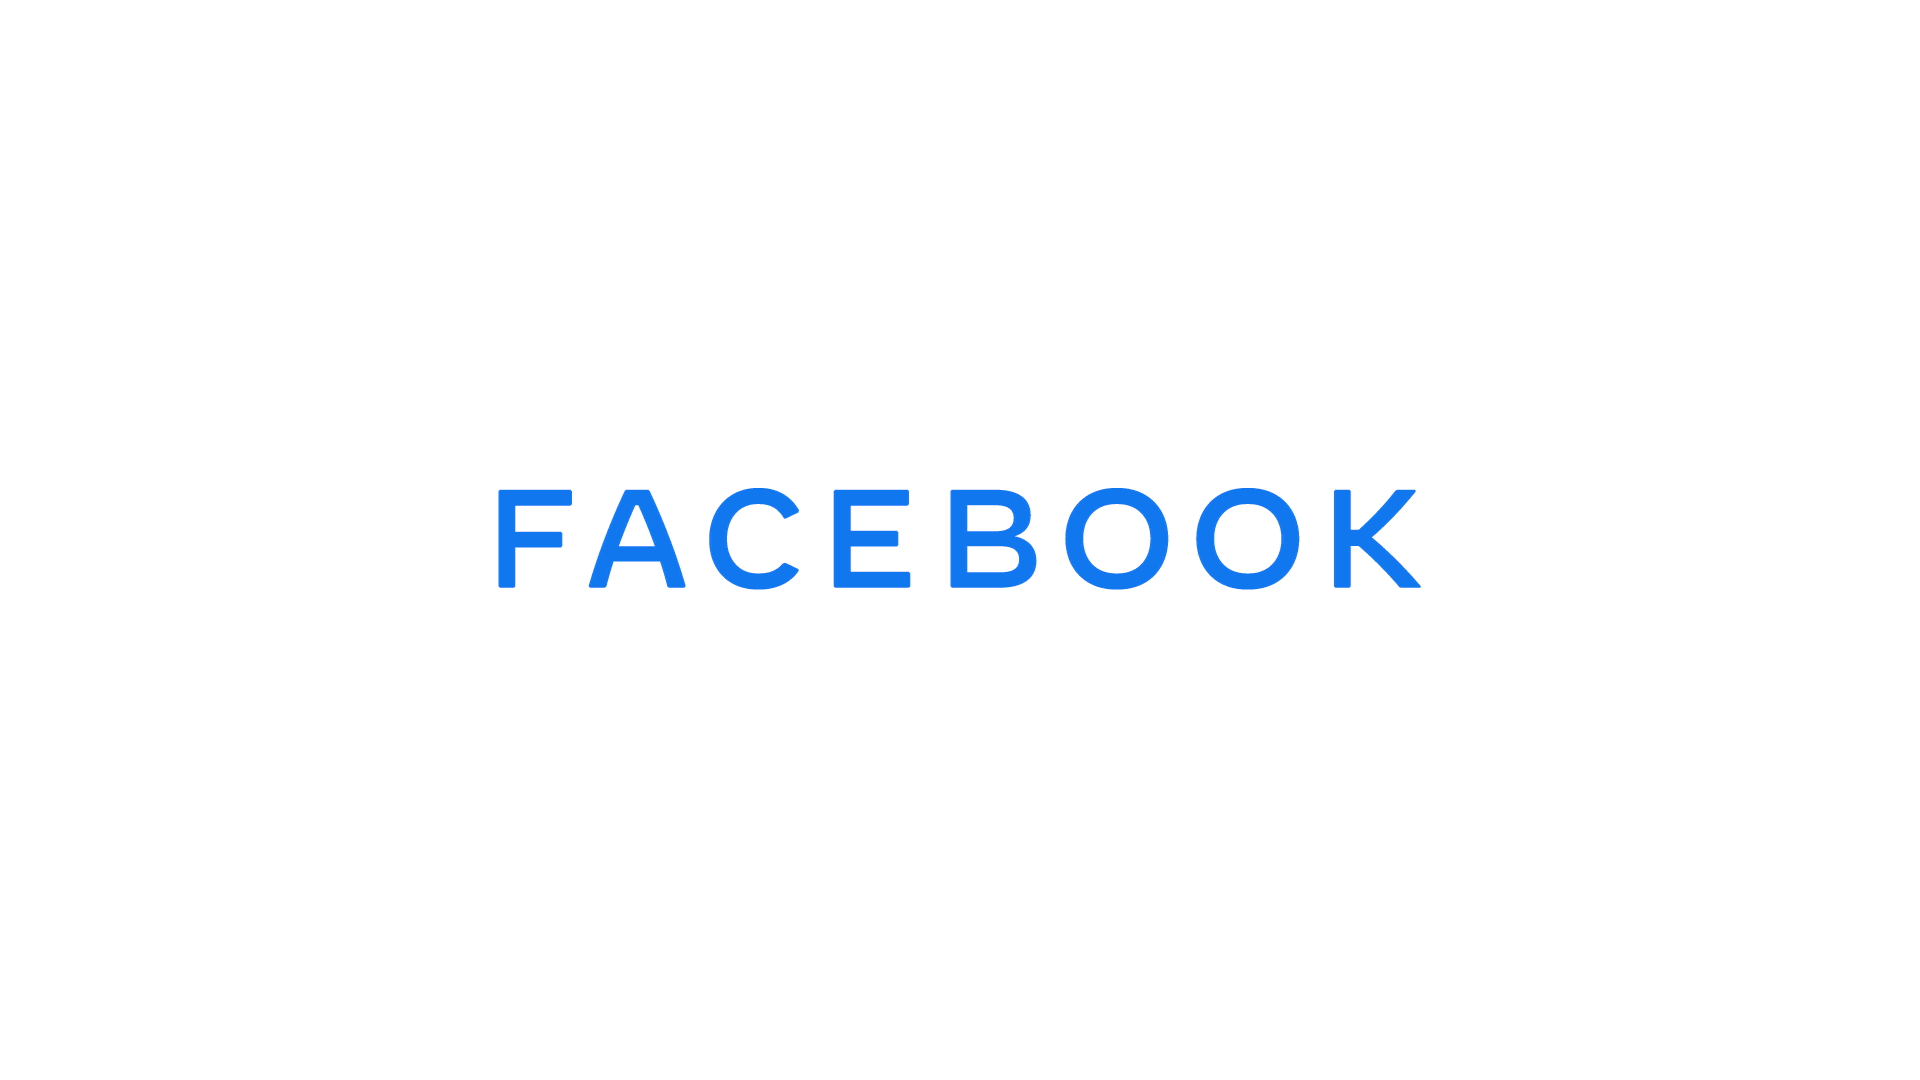 Brandaktuell: Facebook erscheint mit neuem LOGO 10